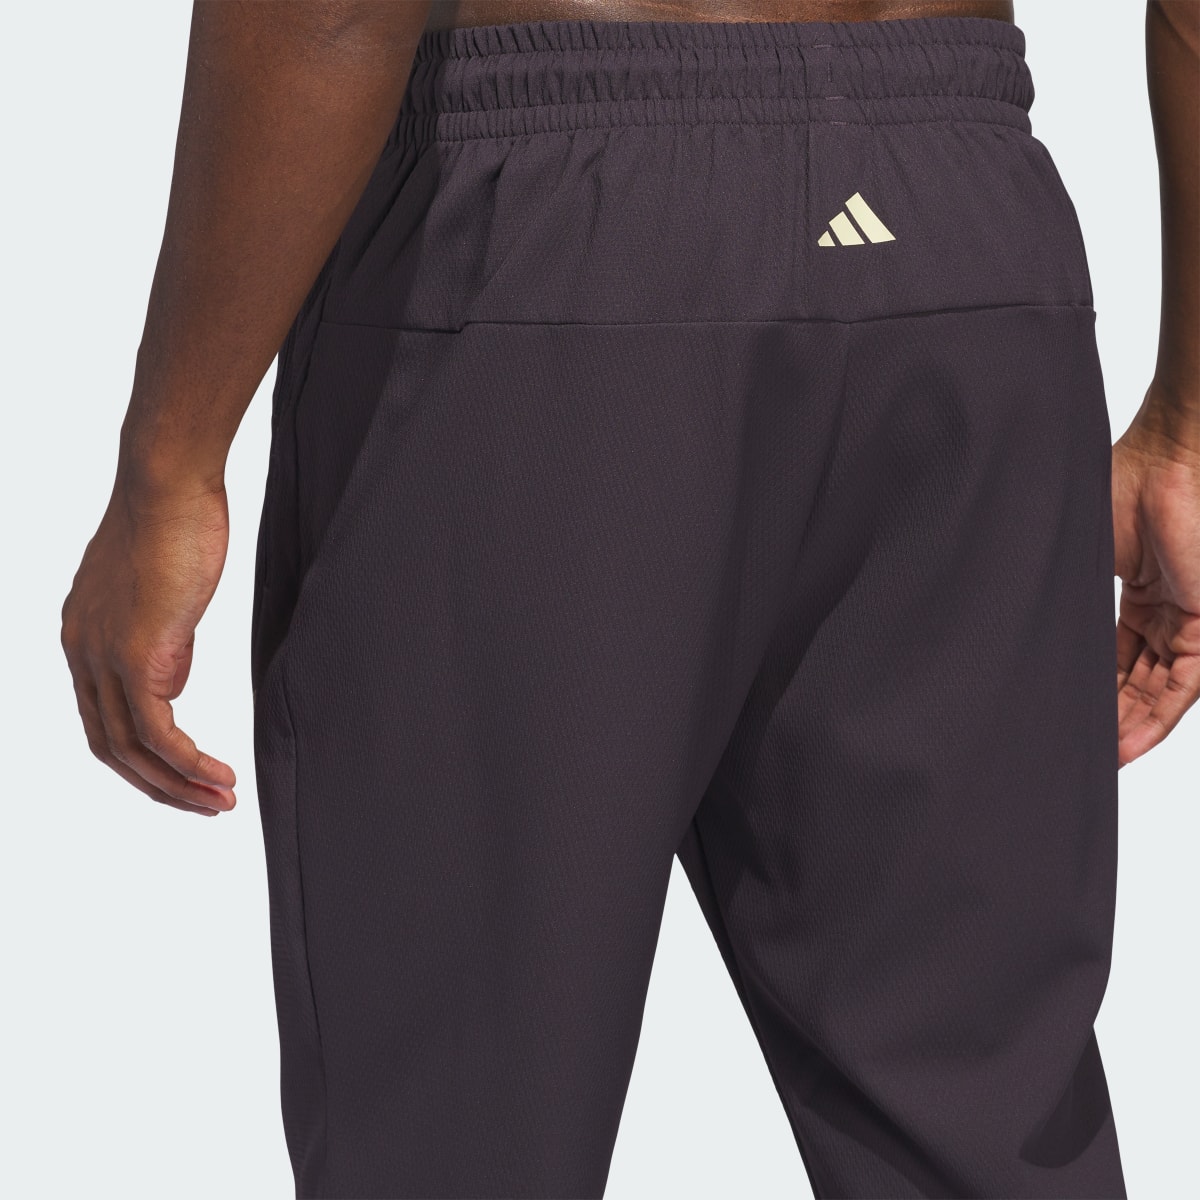 Adidas Basketball Select Pants. 6